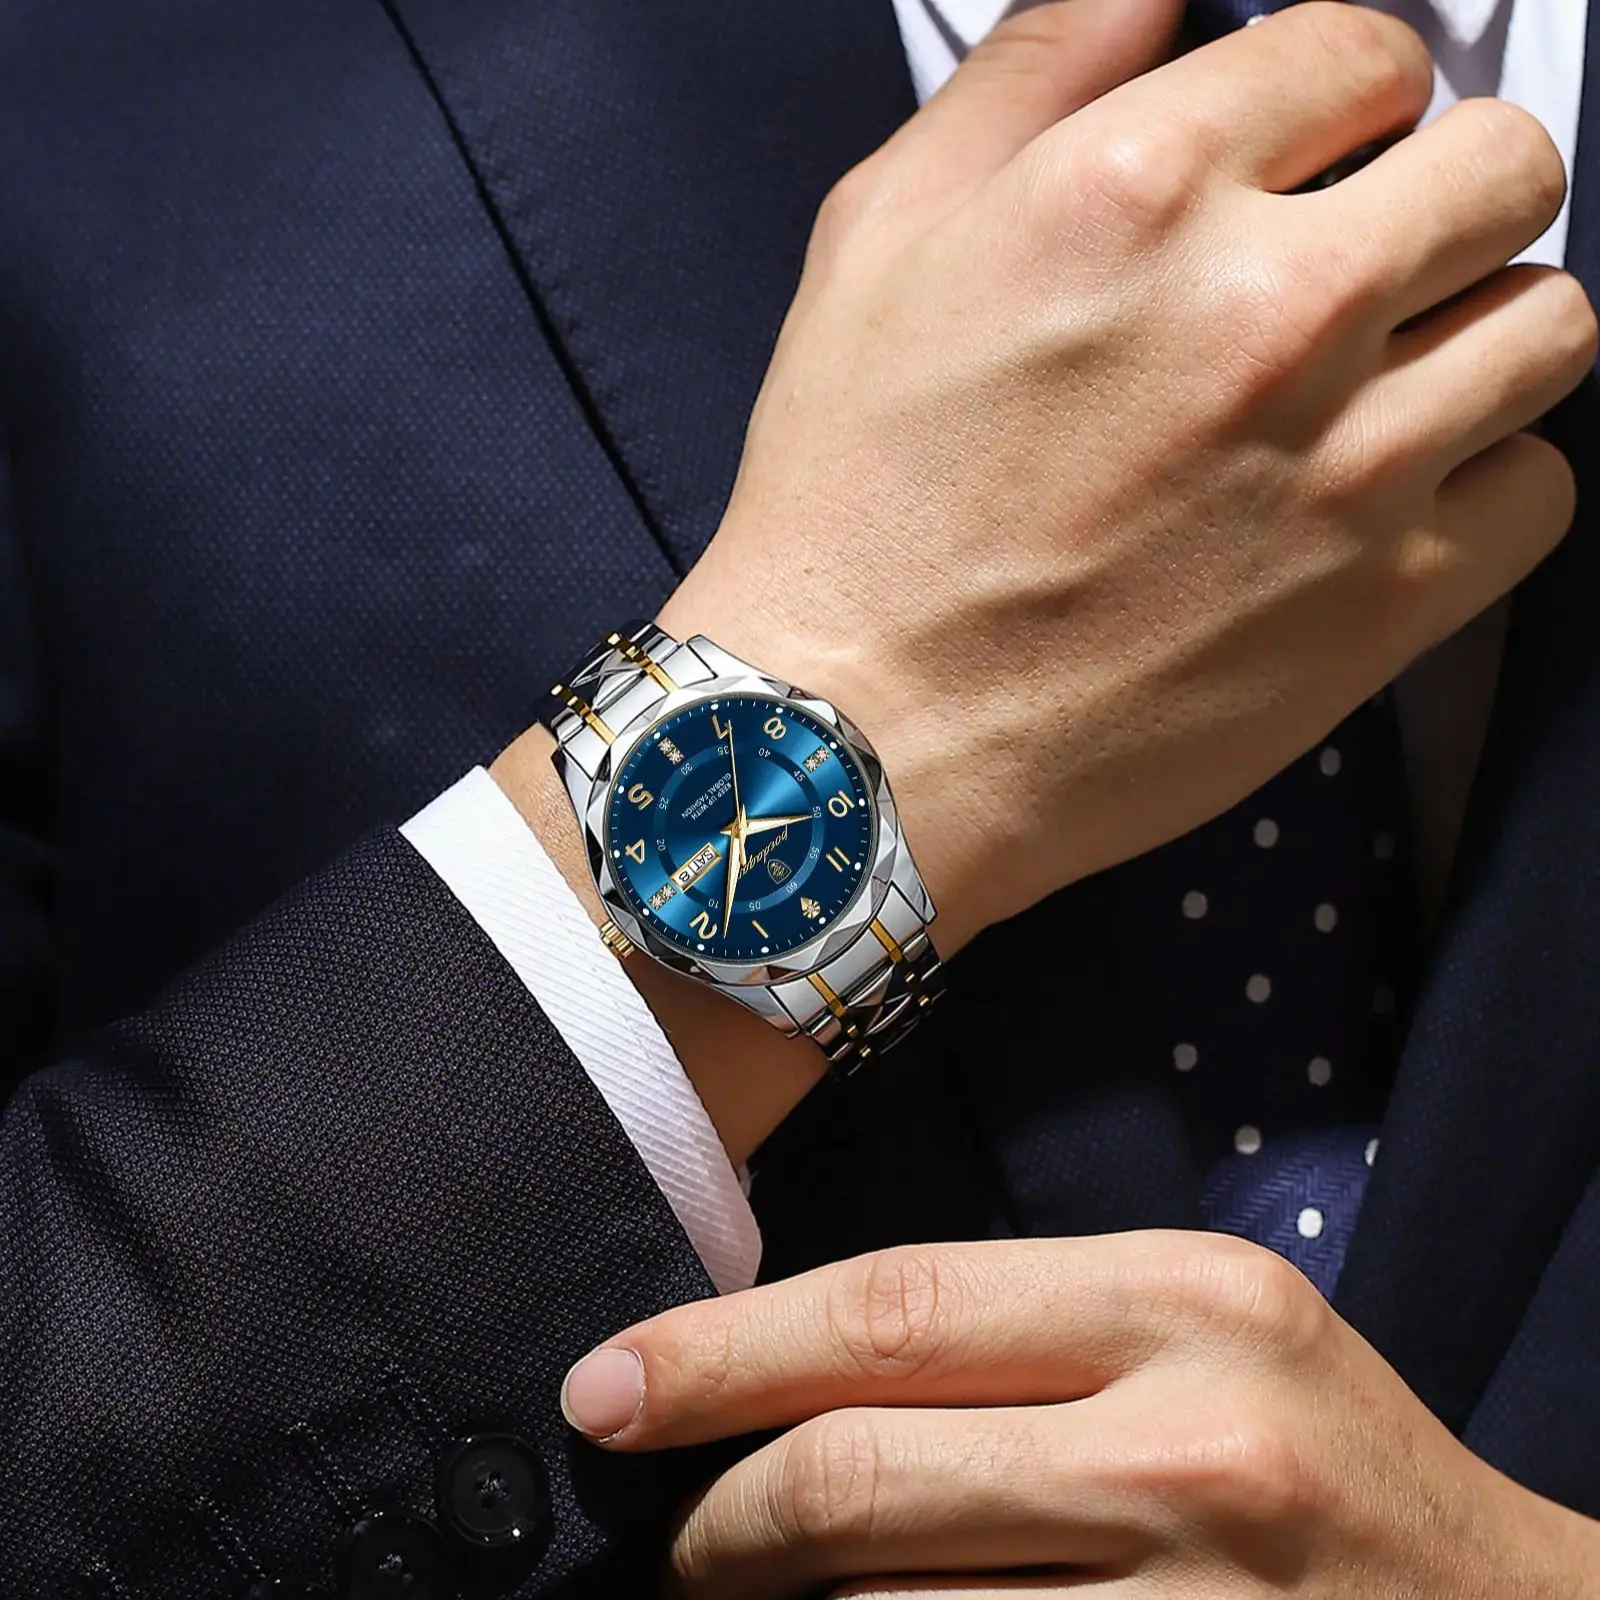 POEDAGAR luksusowy męski zegarek kwarcowy wodoodporny randkowy zegarek luminescencyjny zegarki męskie ze stali nierdzewnej męski zegar sportowy Reloj